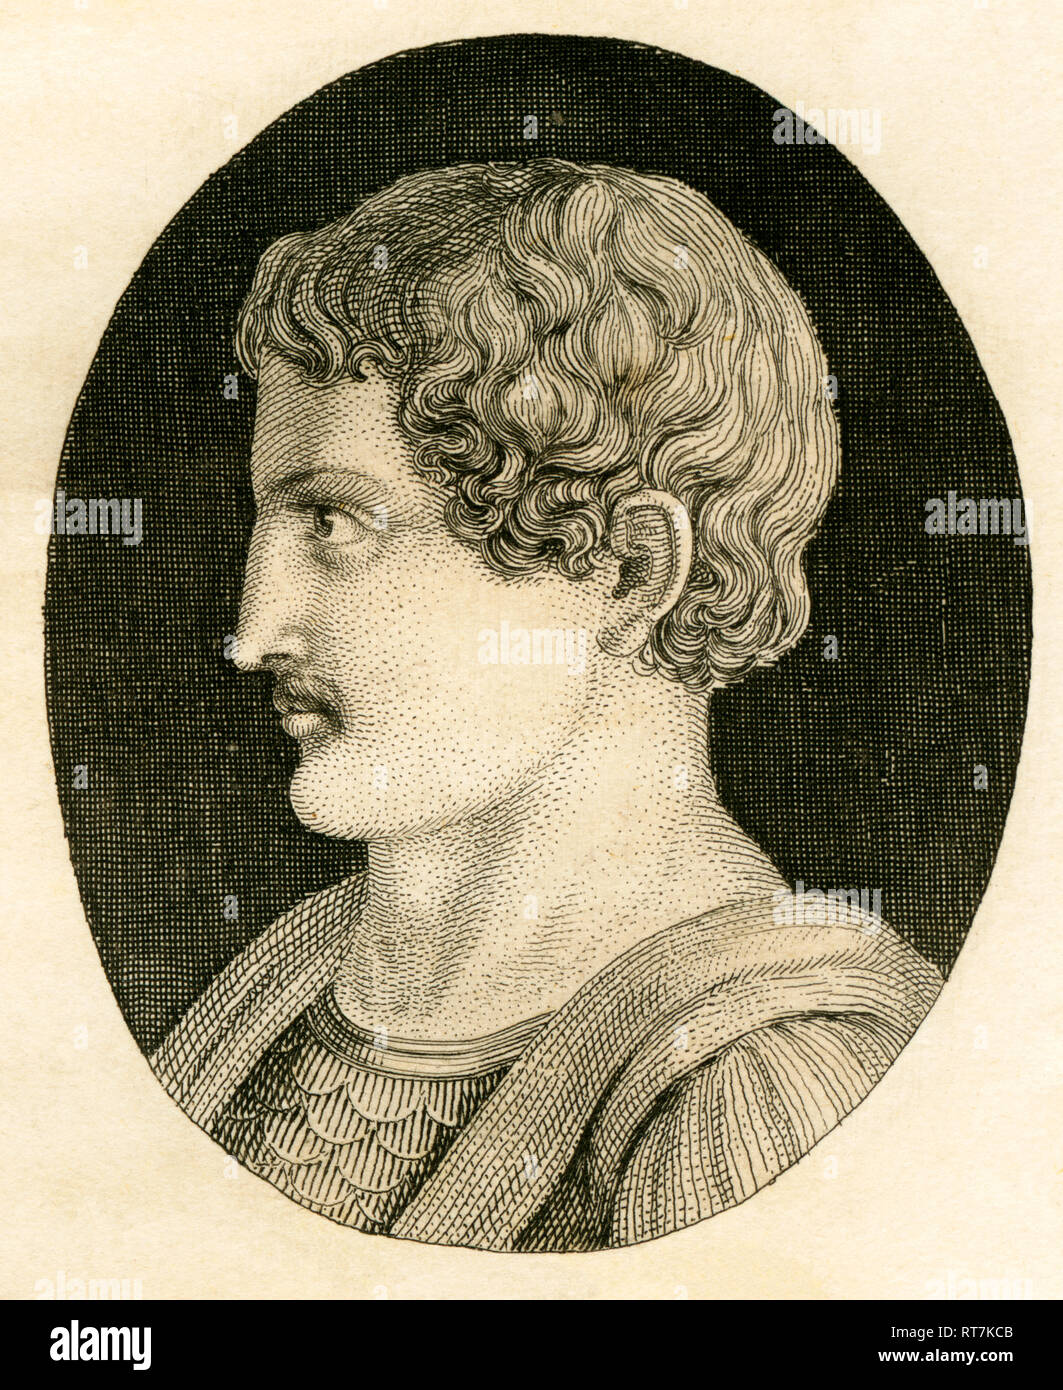 Sulla, político Romano, estratega y déspota, grabado de Strahlheim copperplate, aproximadamente 1840ª., Copyright del artista no ha de ser borrado Foto de stock